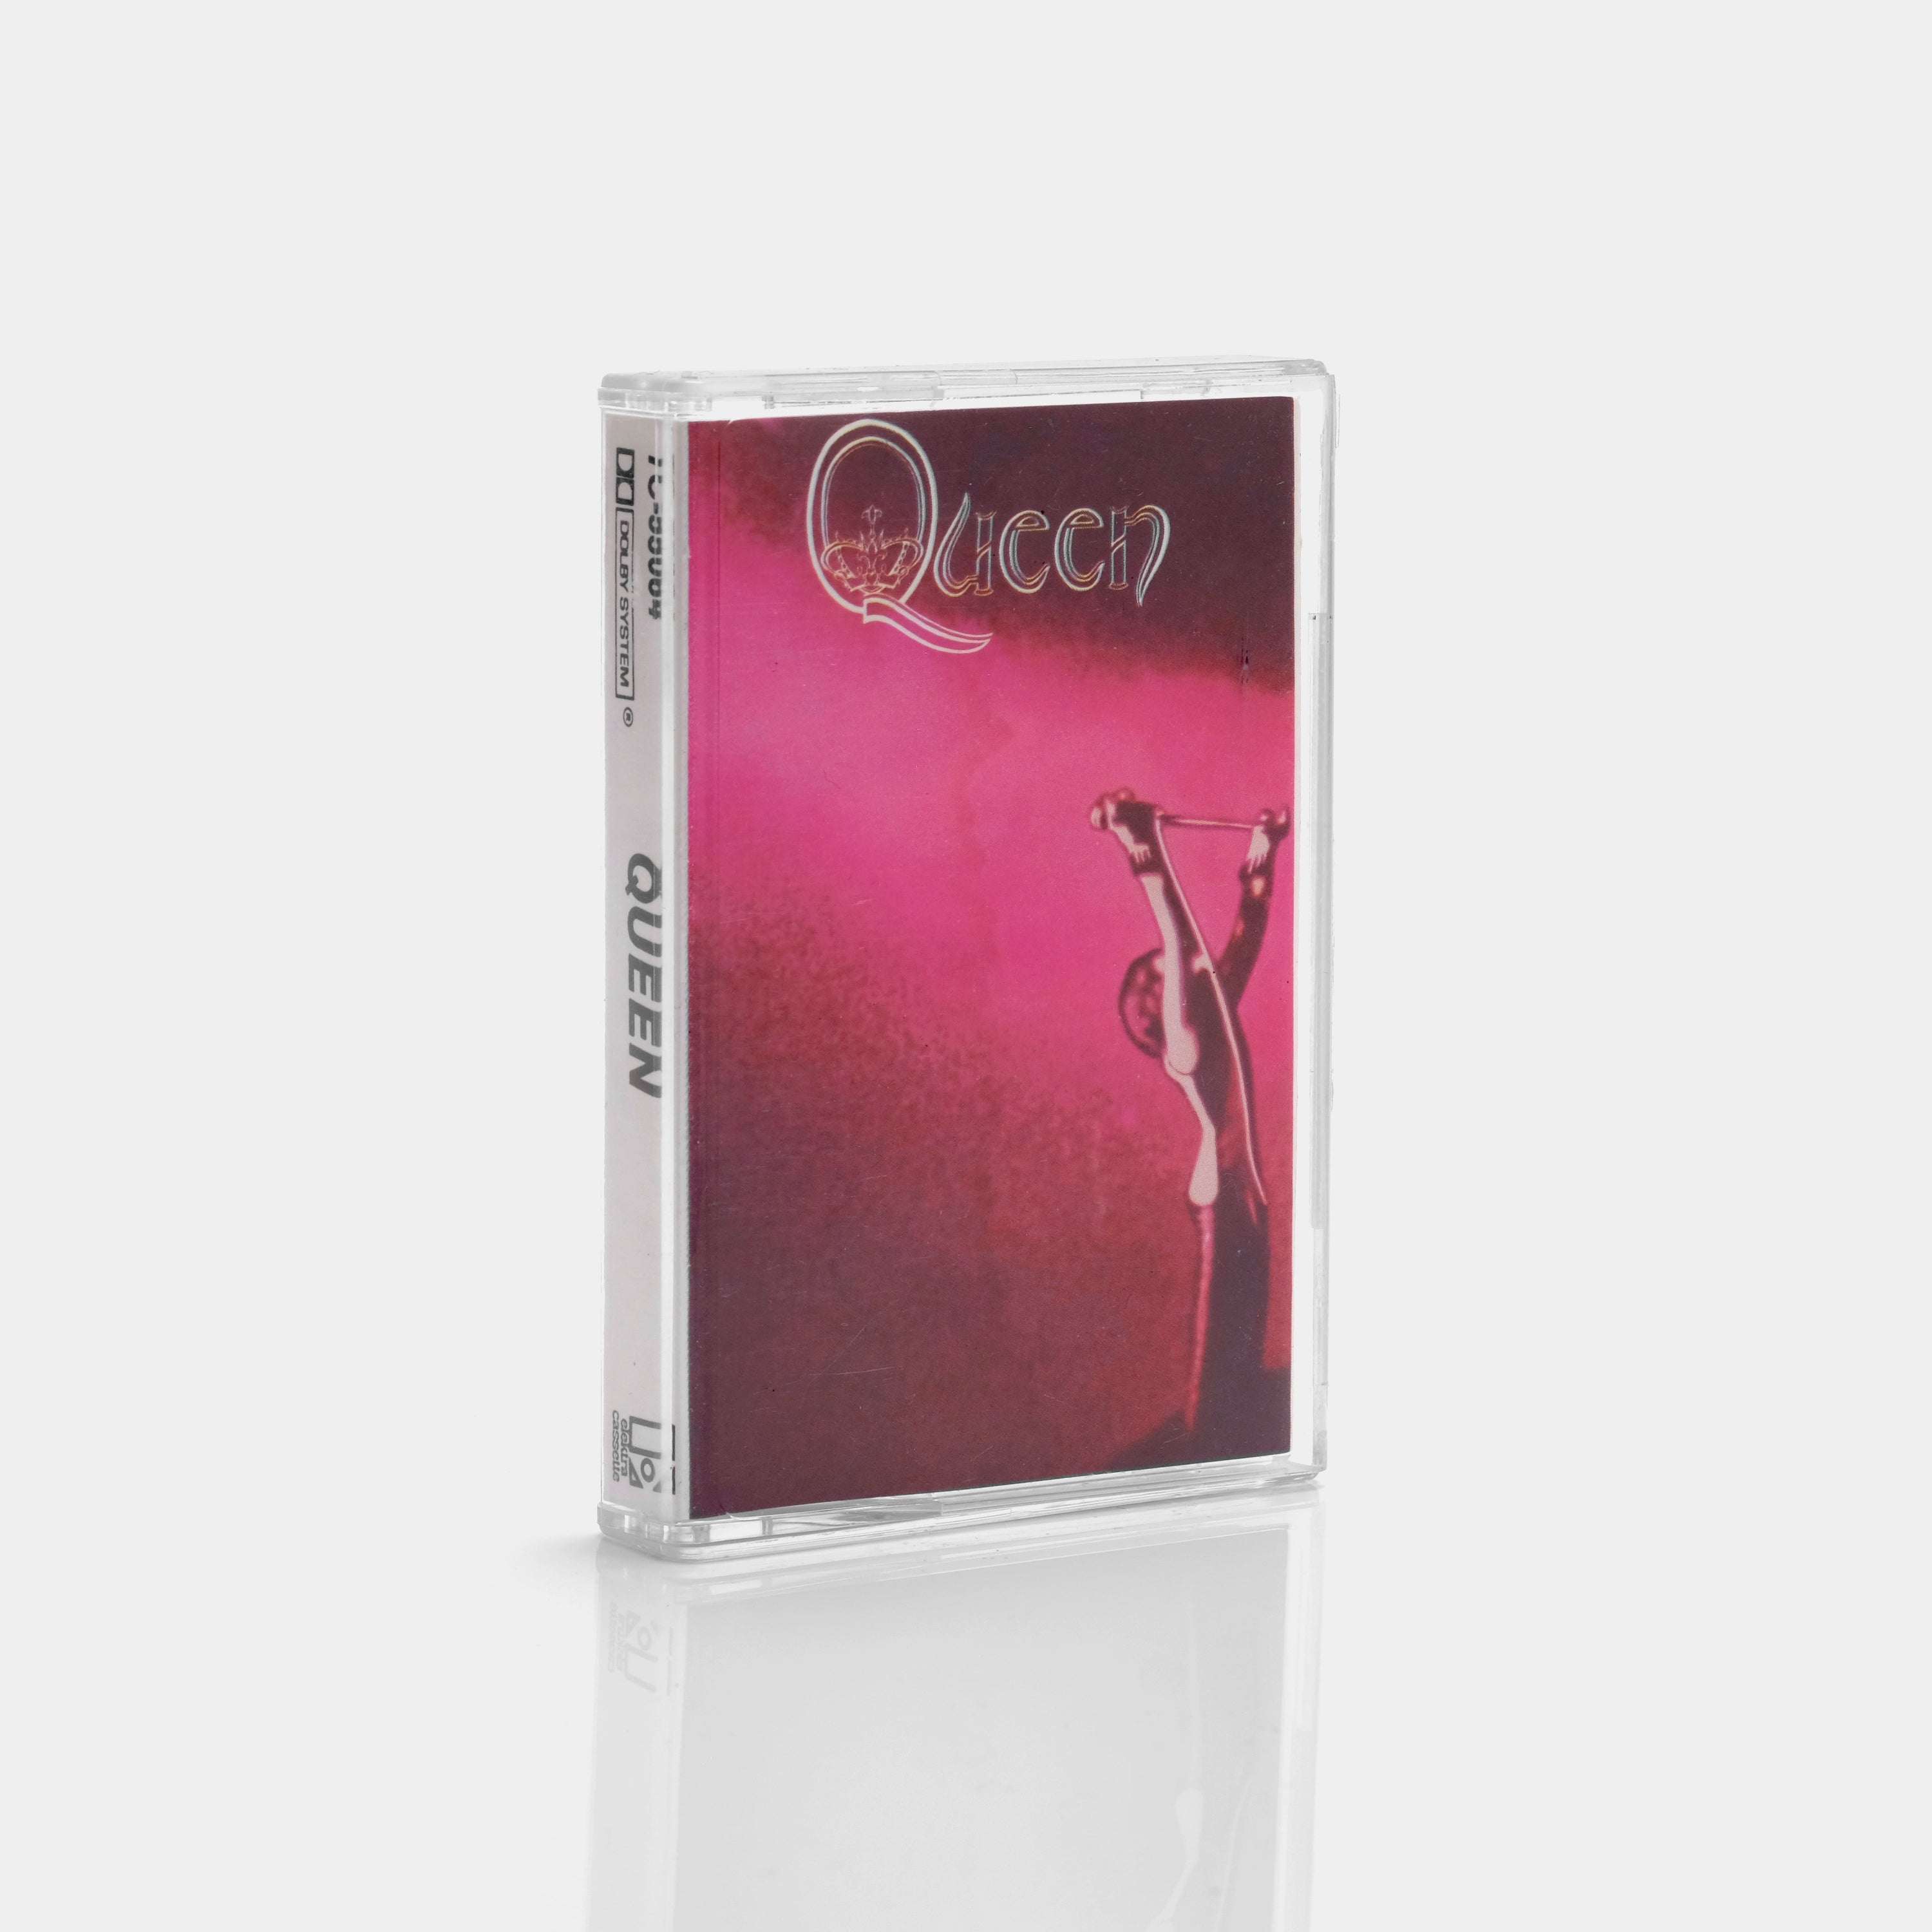 Queen - Queen Cassette Tape